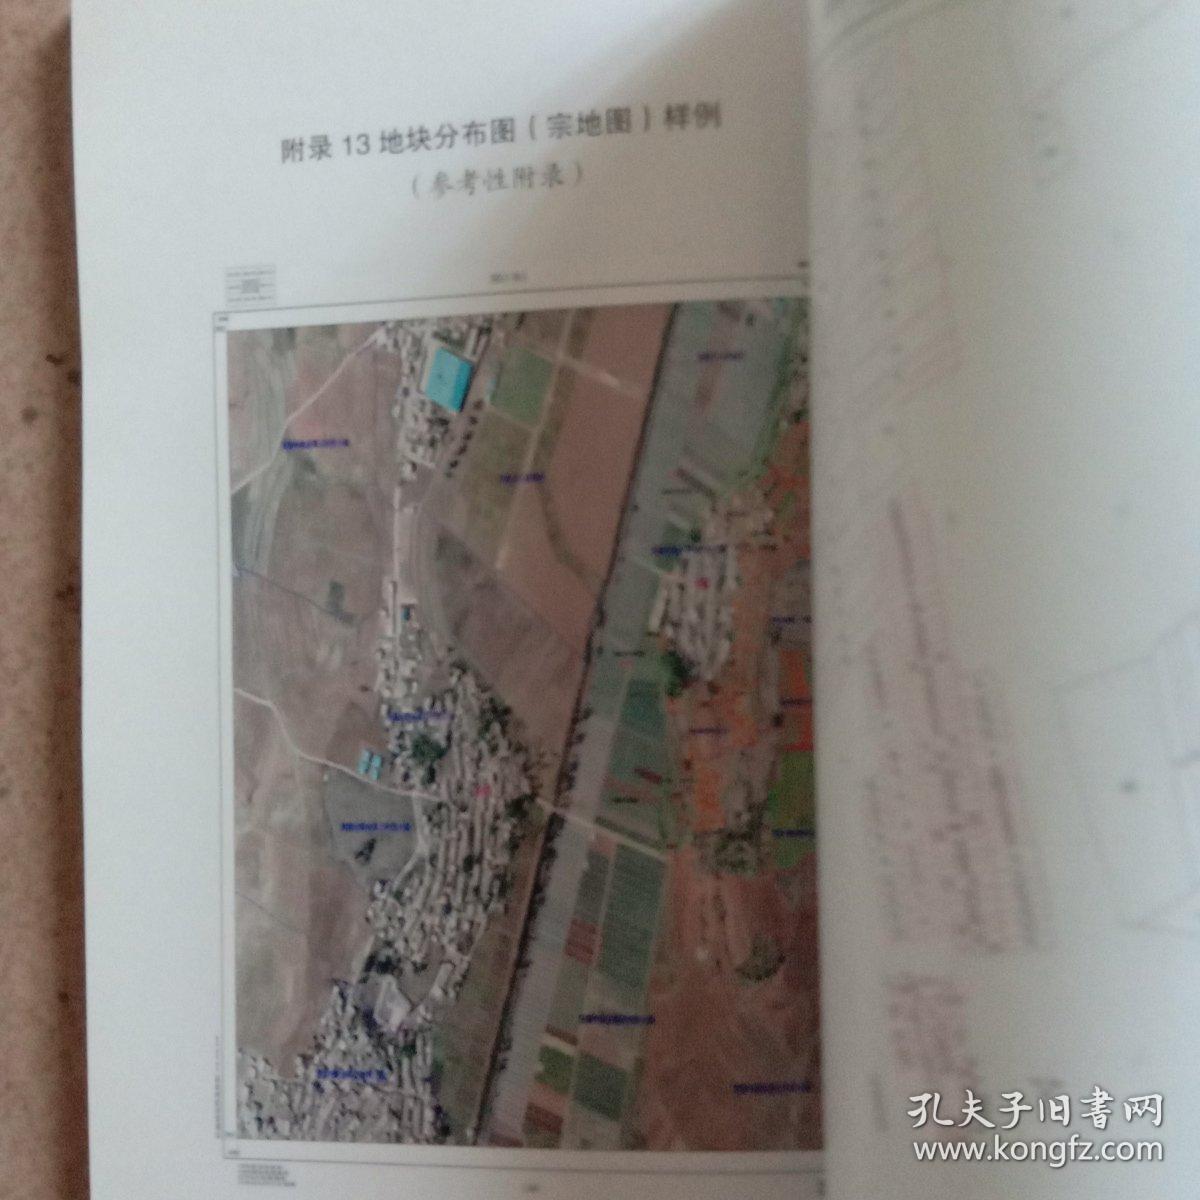 云南省农村土地承包经营权确权登记颁证工作手册